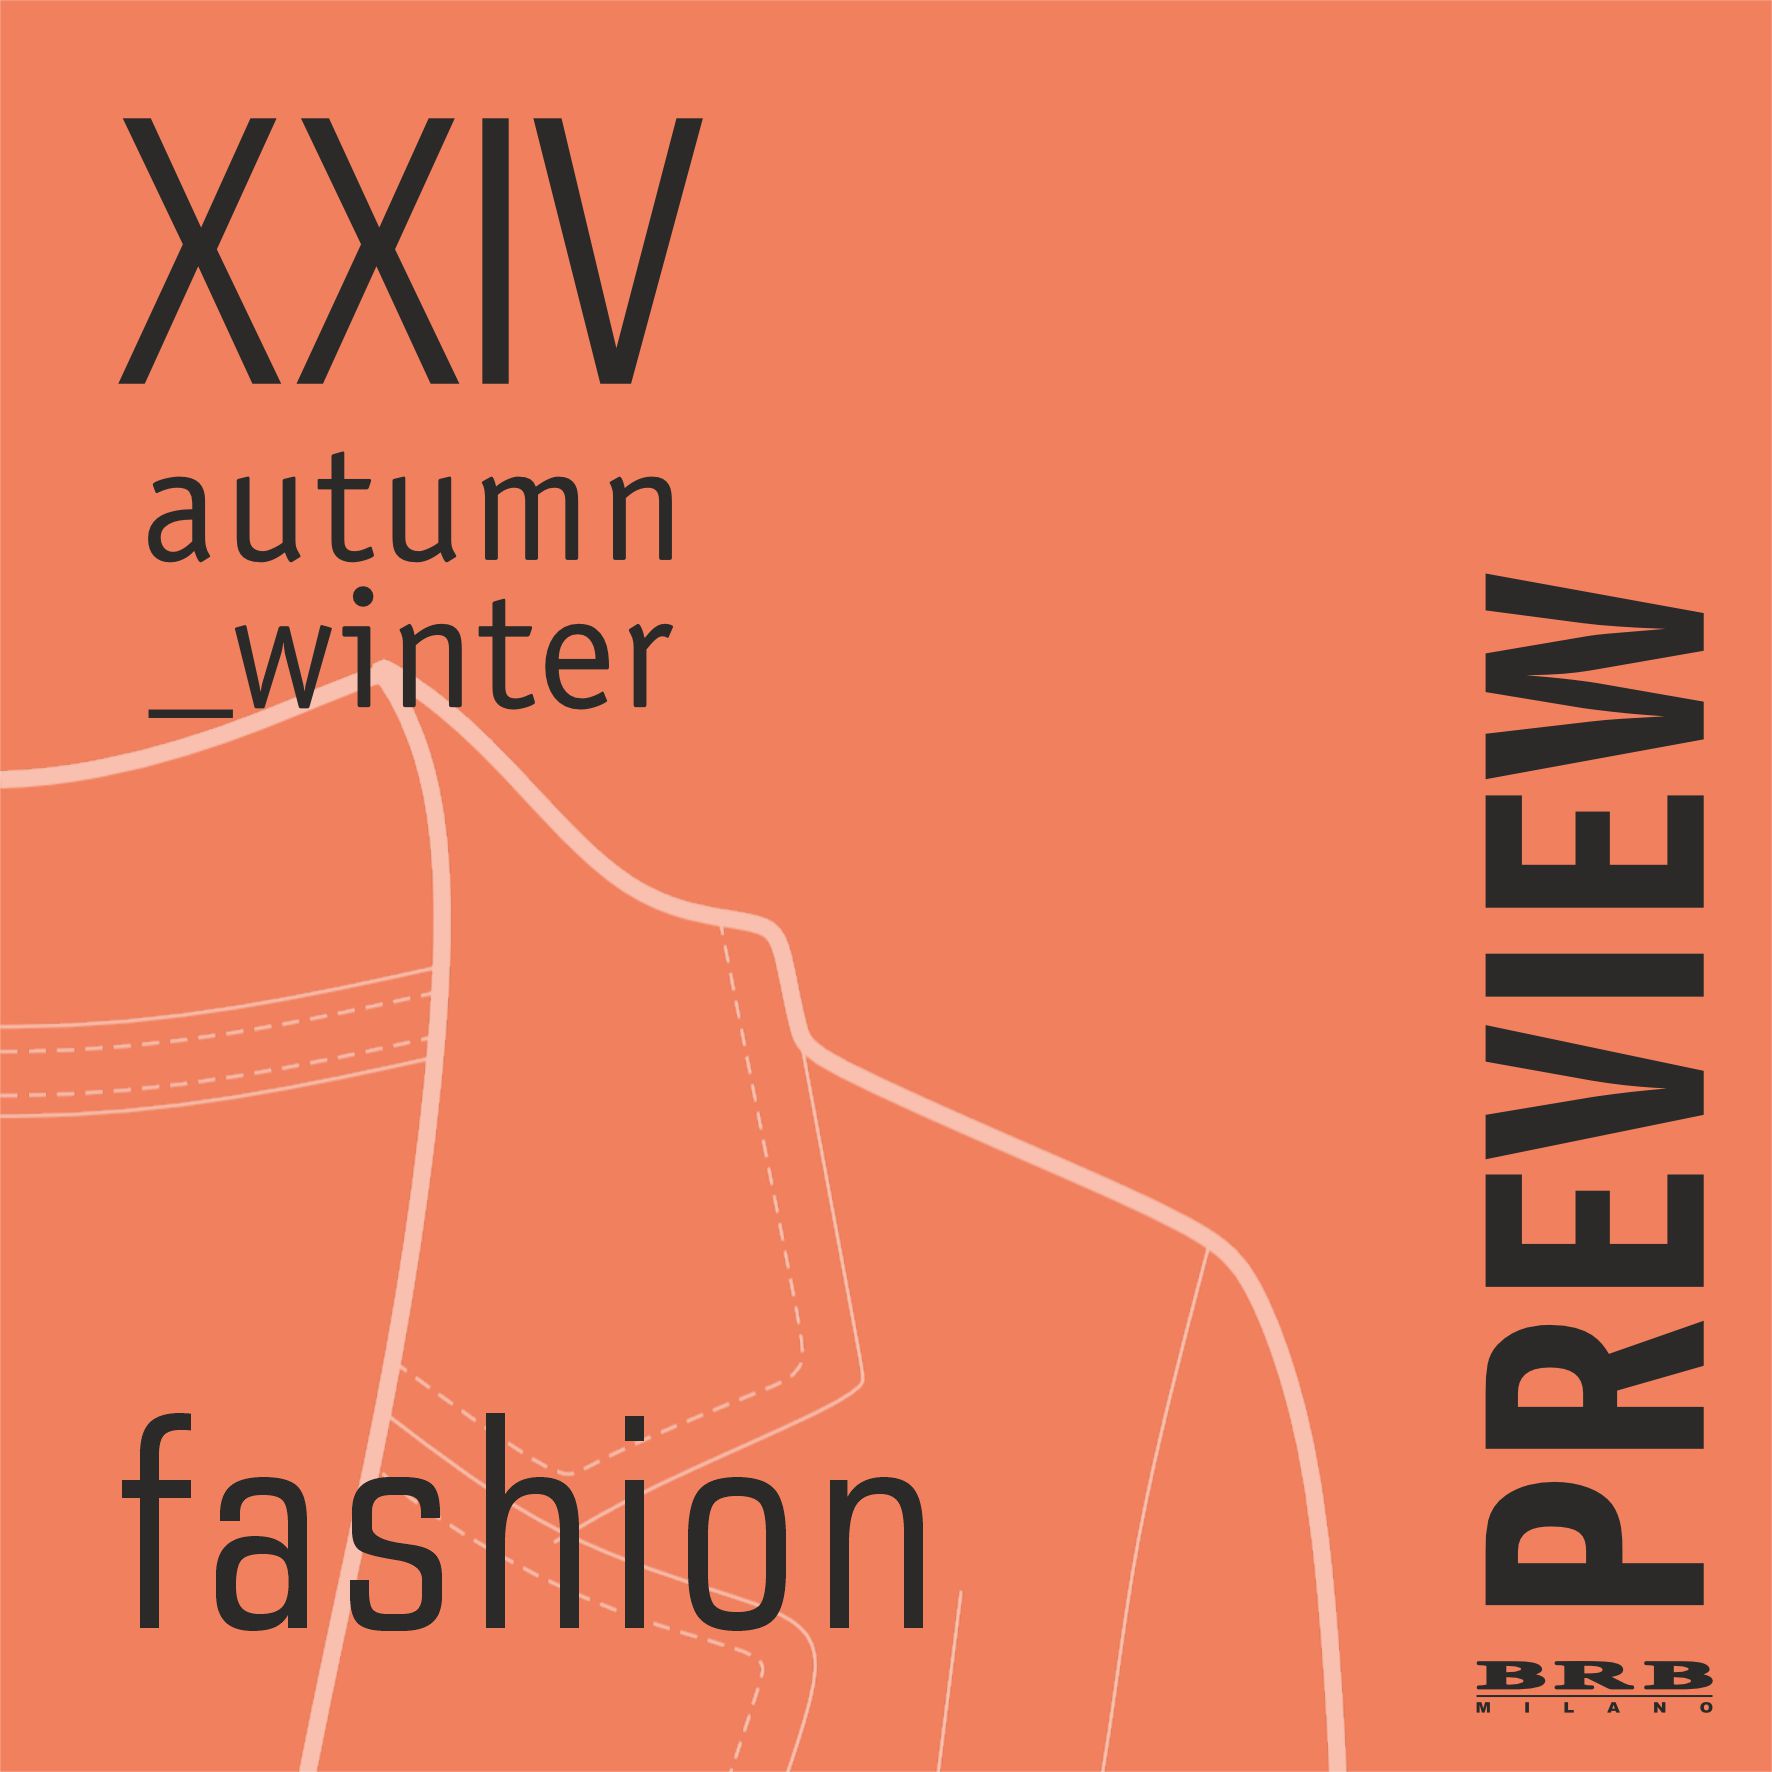 Fashion Autumn Winter XXIV